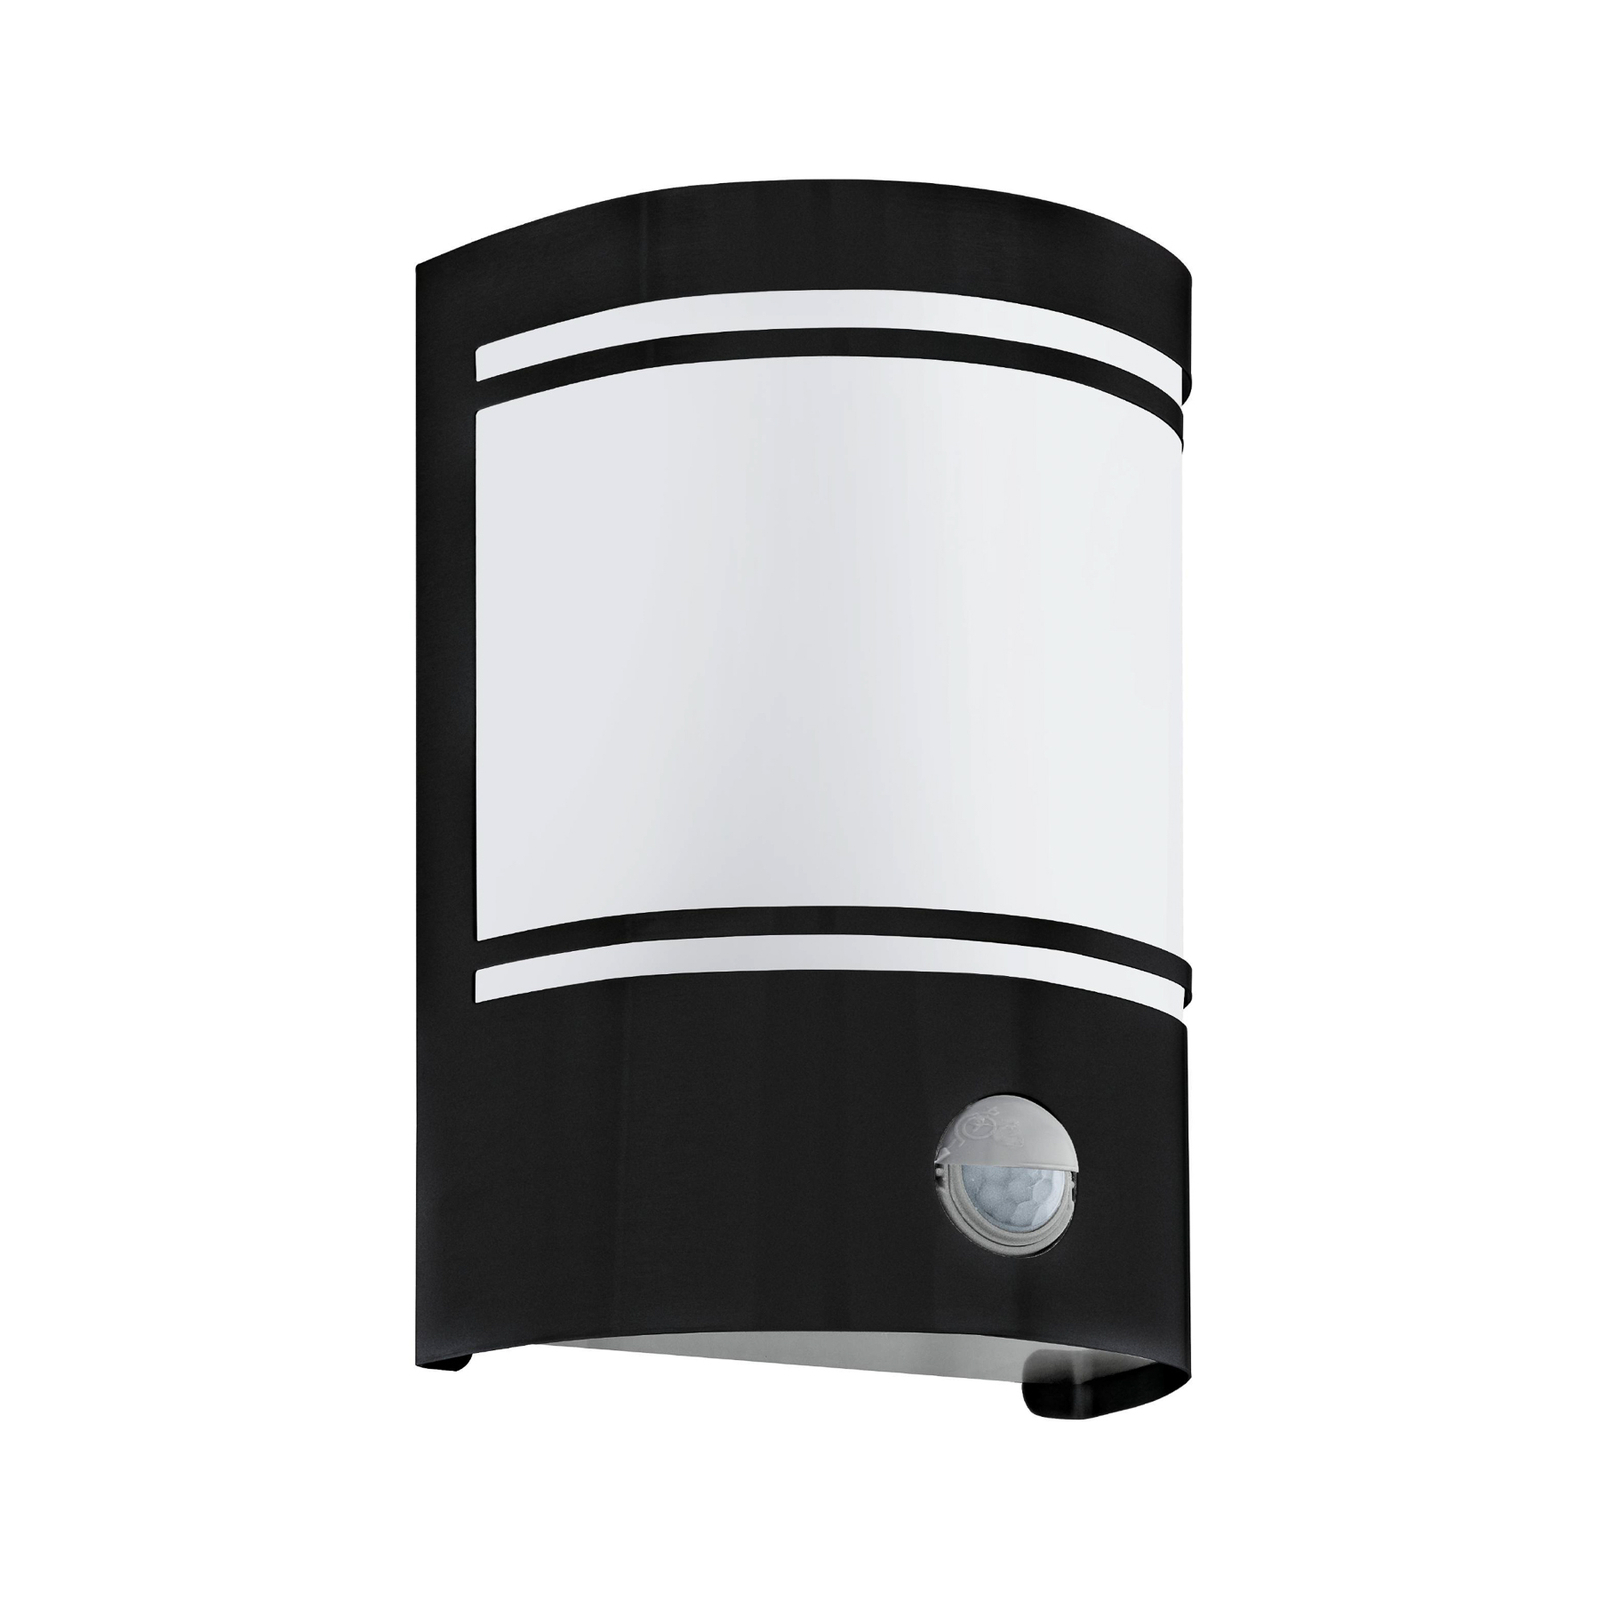 Cerno vanjska zidna lampa s detektorom pokreta, crna